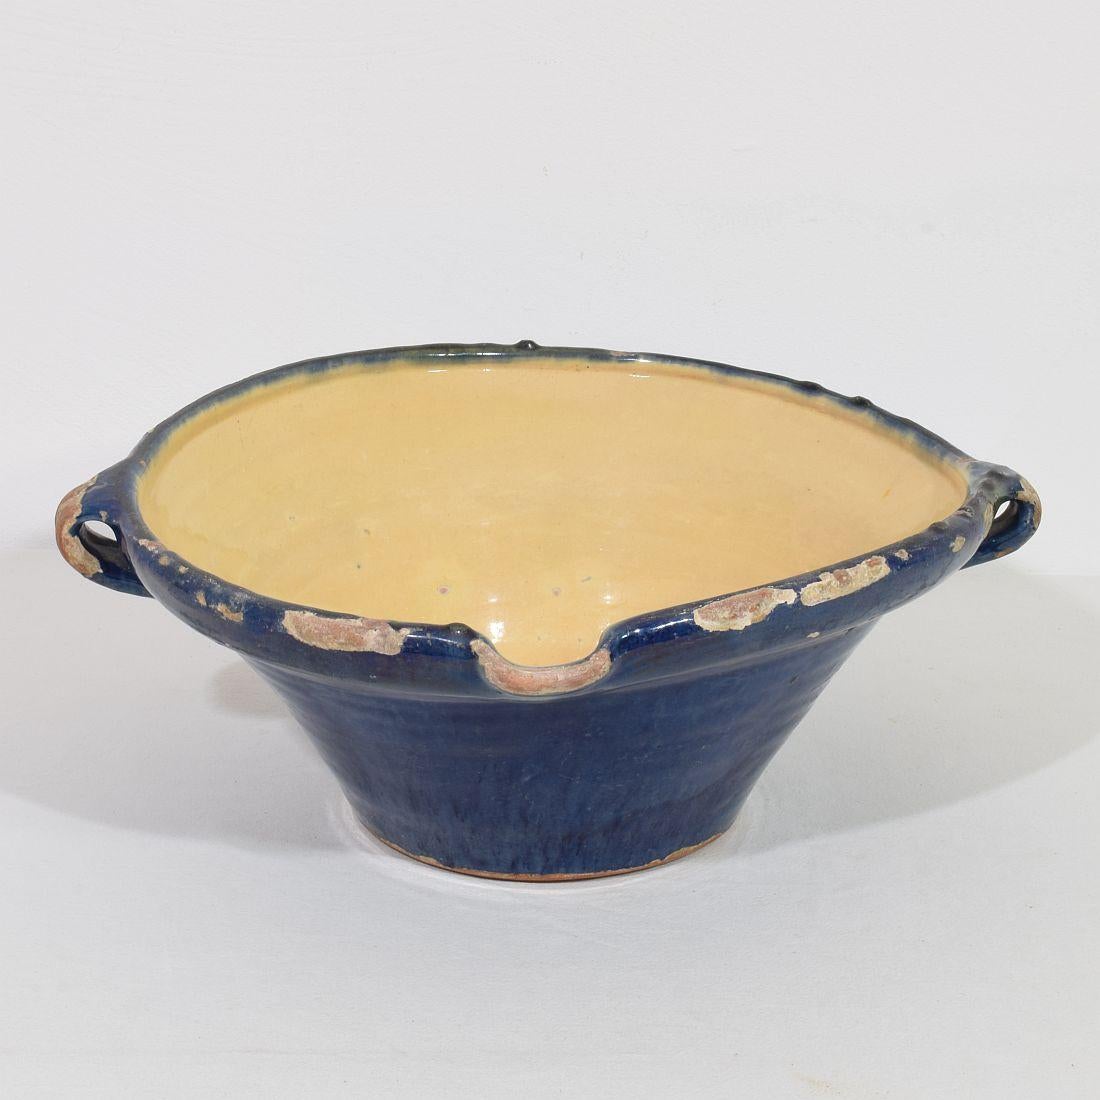 Große authentische und extrem seltene Stück Keramik aus der Provence. Schön verwittert und eine erstaunliche und fast unmöglich zu finden blaue Farbe
Frankreich, um 1850
Guter, aber verwitterter Zustand.
